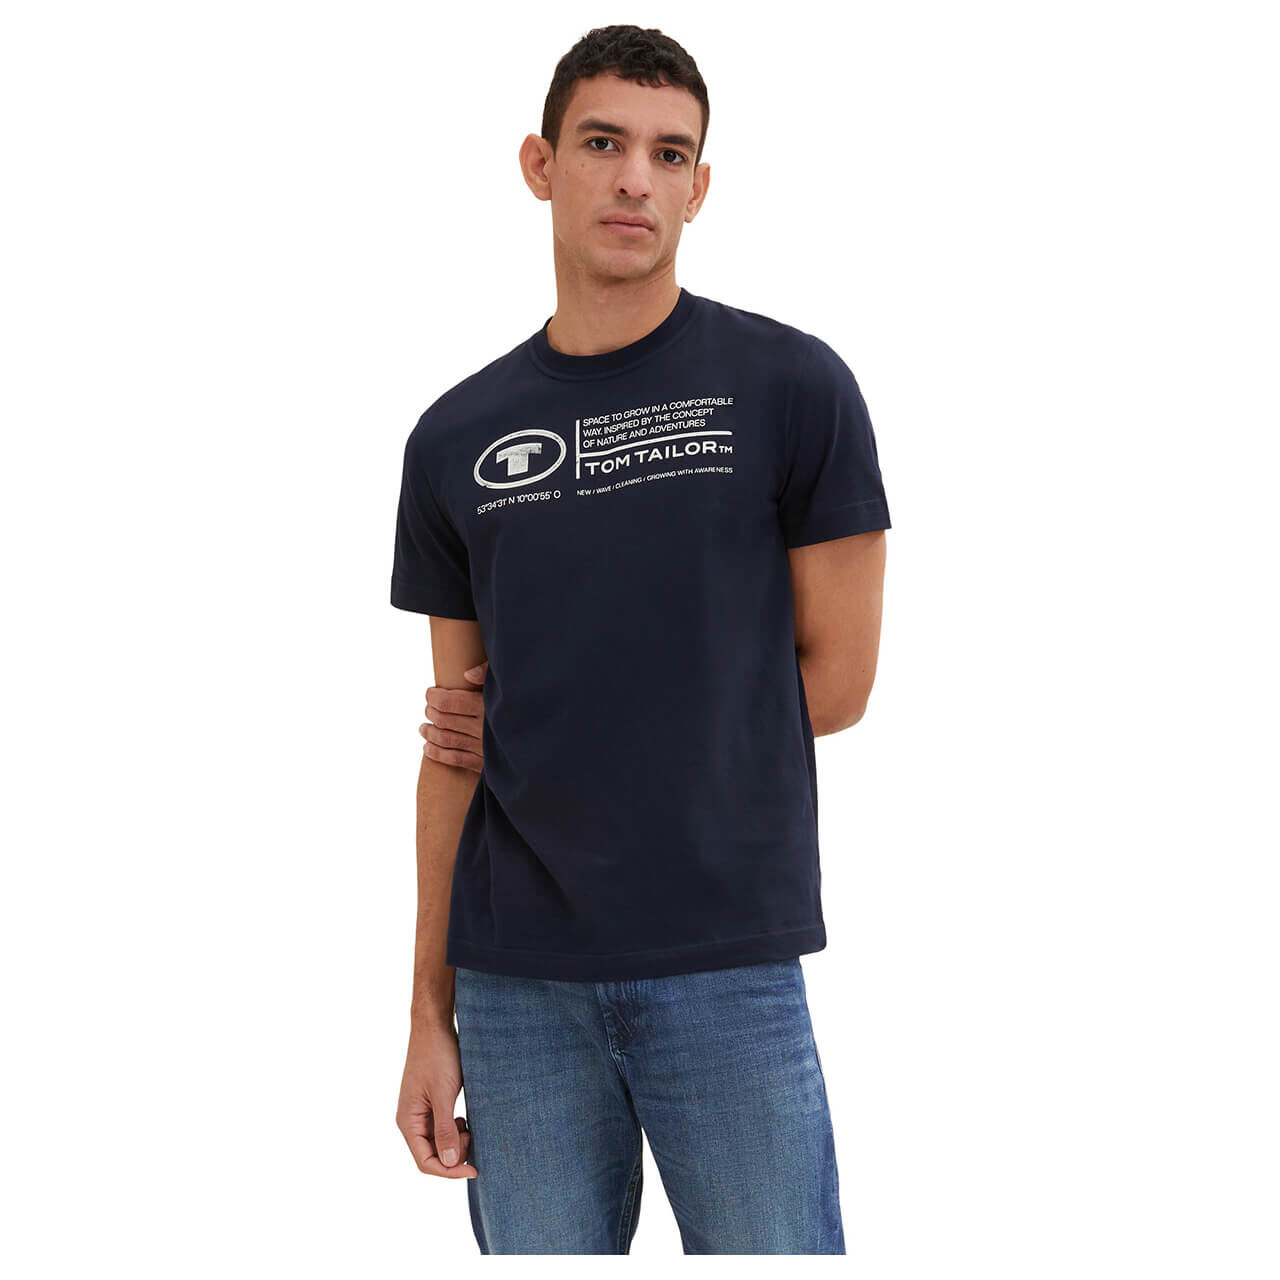 Tom Tailor Herren T-Shirt sky captain blue logo wording